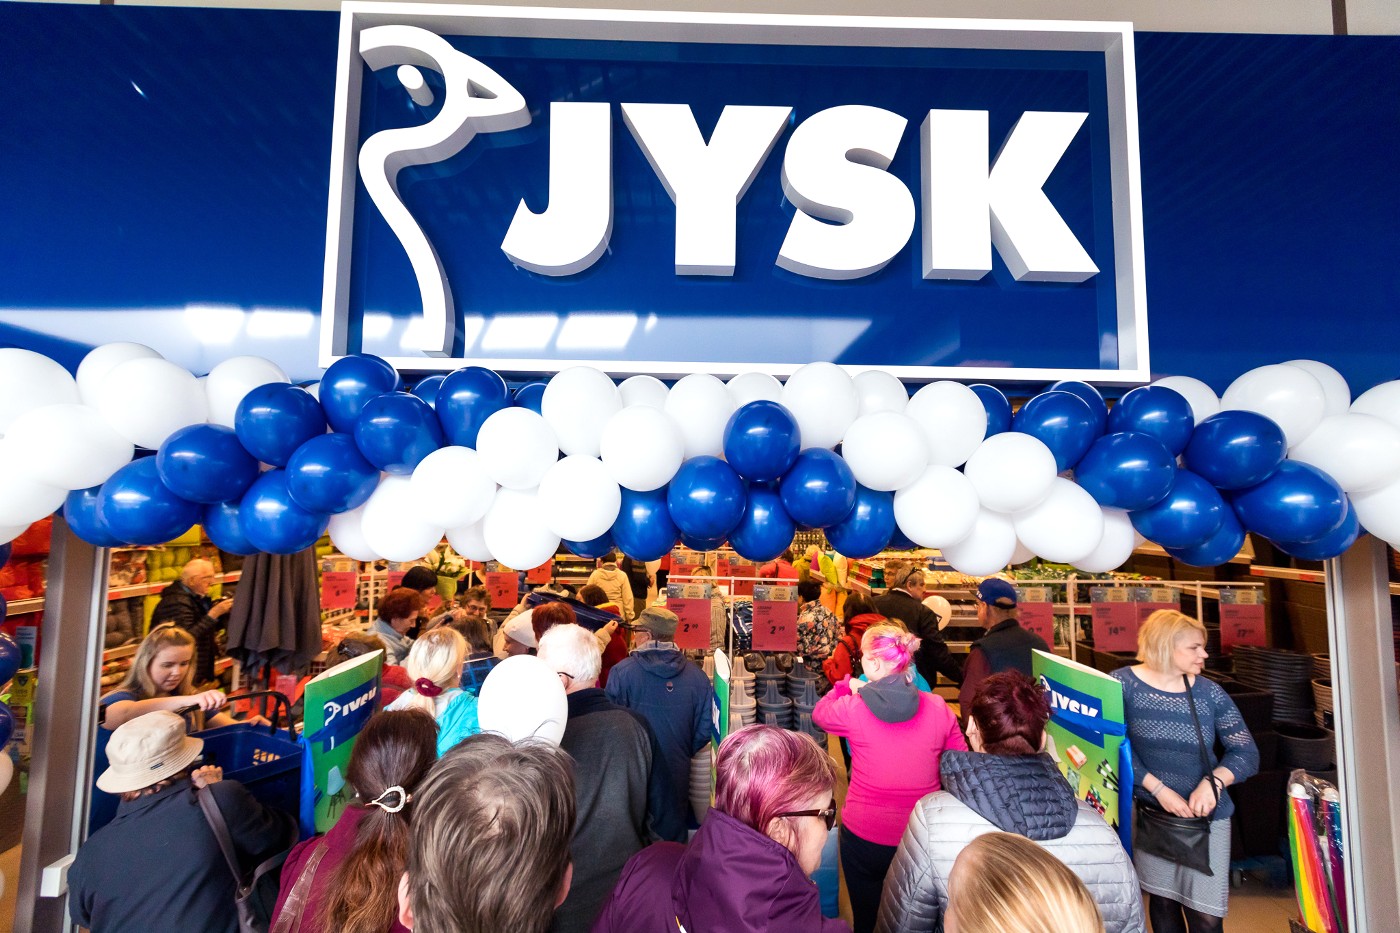 Jysk Хаапсалу — первый магазин в Ляэнемаа